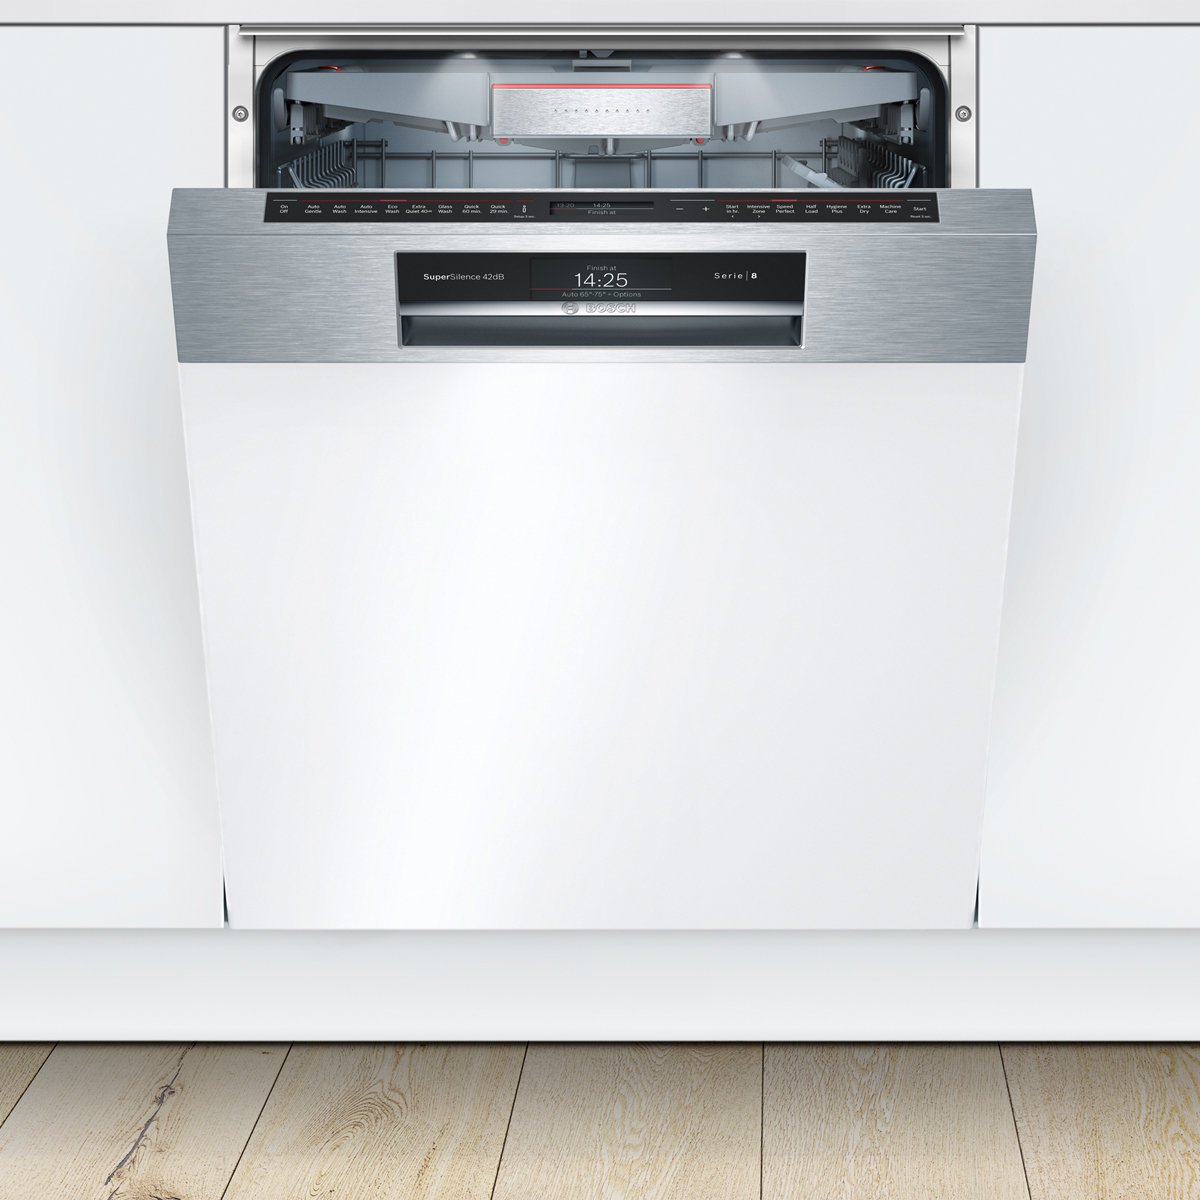 Лучшие посудомоечные машины встраиваемые отзывы. Посудомоечная машина встраиваемая 60 бош. Посудомоечная машина бош 60 см встраиваемая. Bosch serie посудомоечная машина 60 см встраиваемая. Посудомойка бош встраиваемая 60.